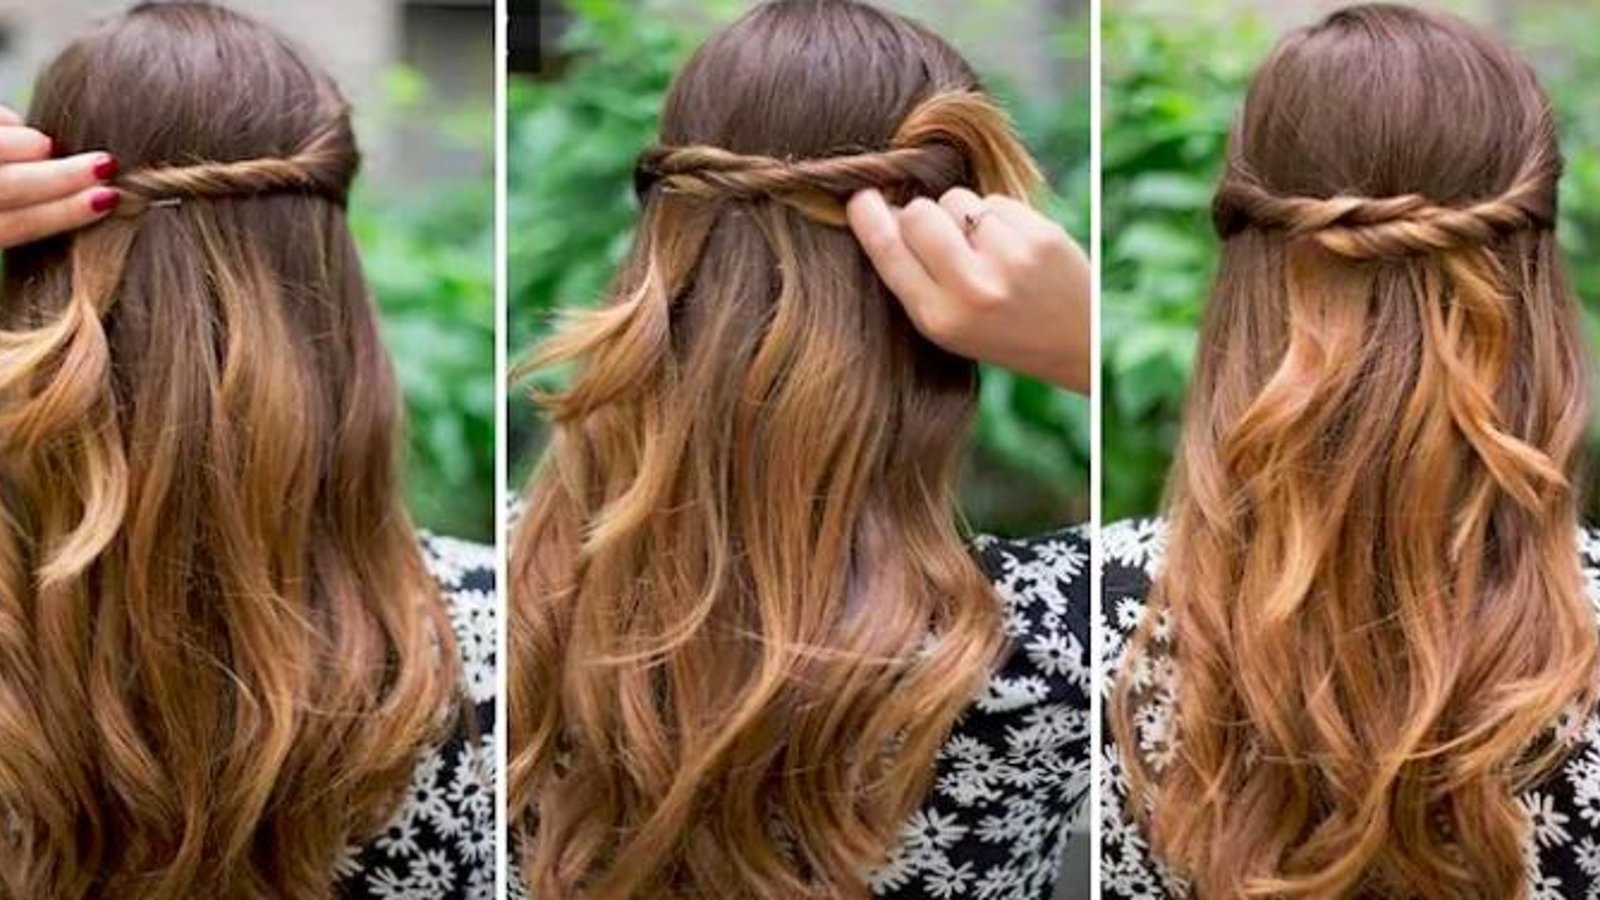 16 coiffures jolies et faciles à réaliser pour les filles paresseuses